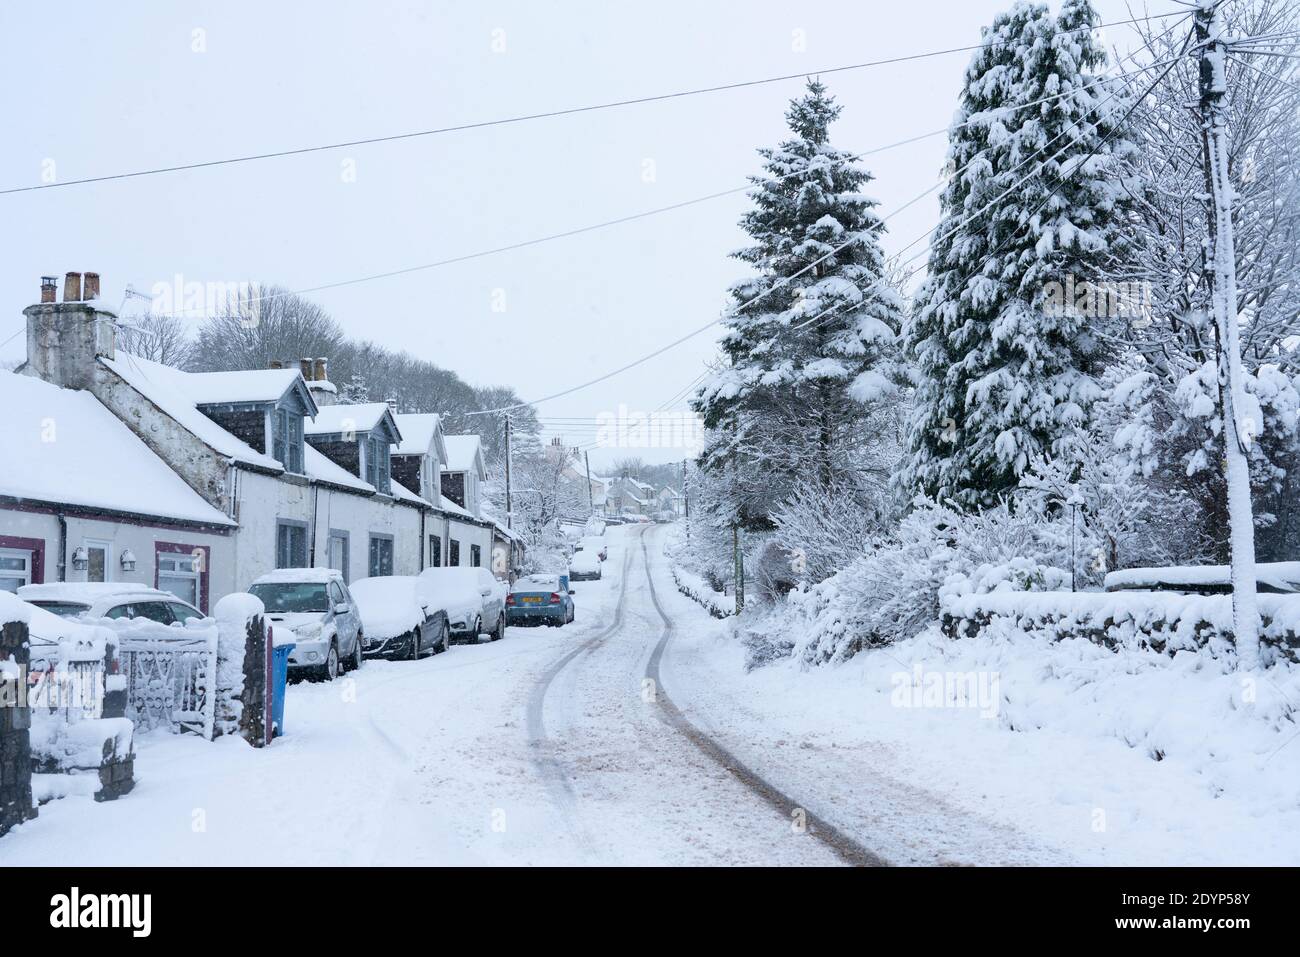 LeadHills, Scozia, Regno Unito. 27 dicembre 2020. La neve alta cade sul secondo villaggio più alto della Scozia, Leadhills, nel Lanarkshire meridionale. Iain Masterton/Alamy Live News Foto Stock